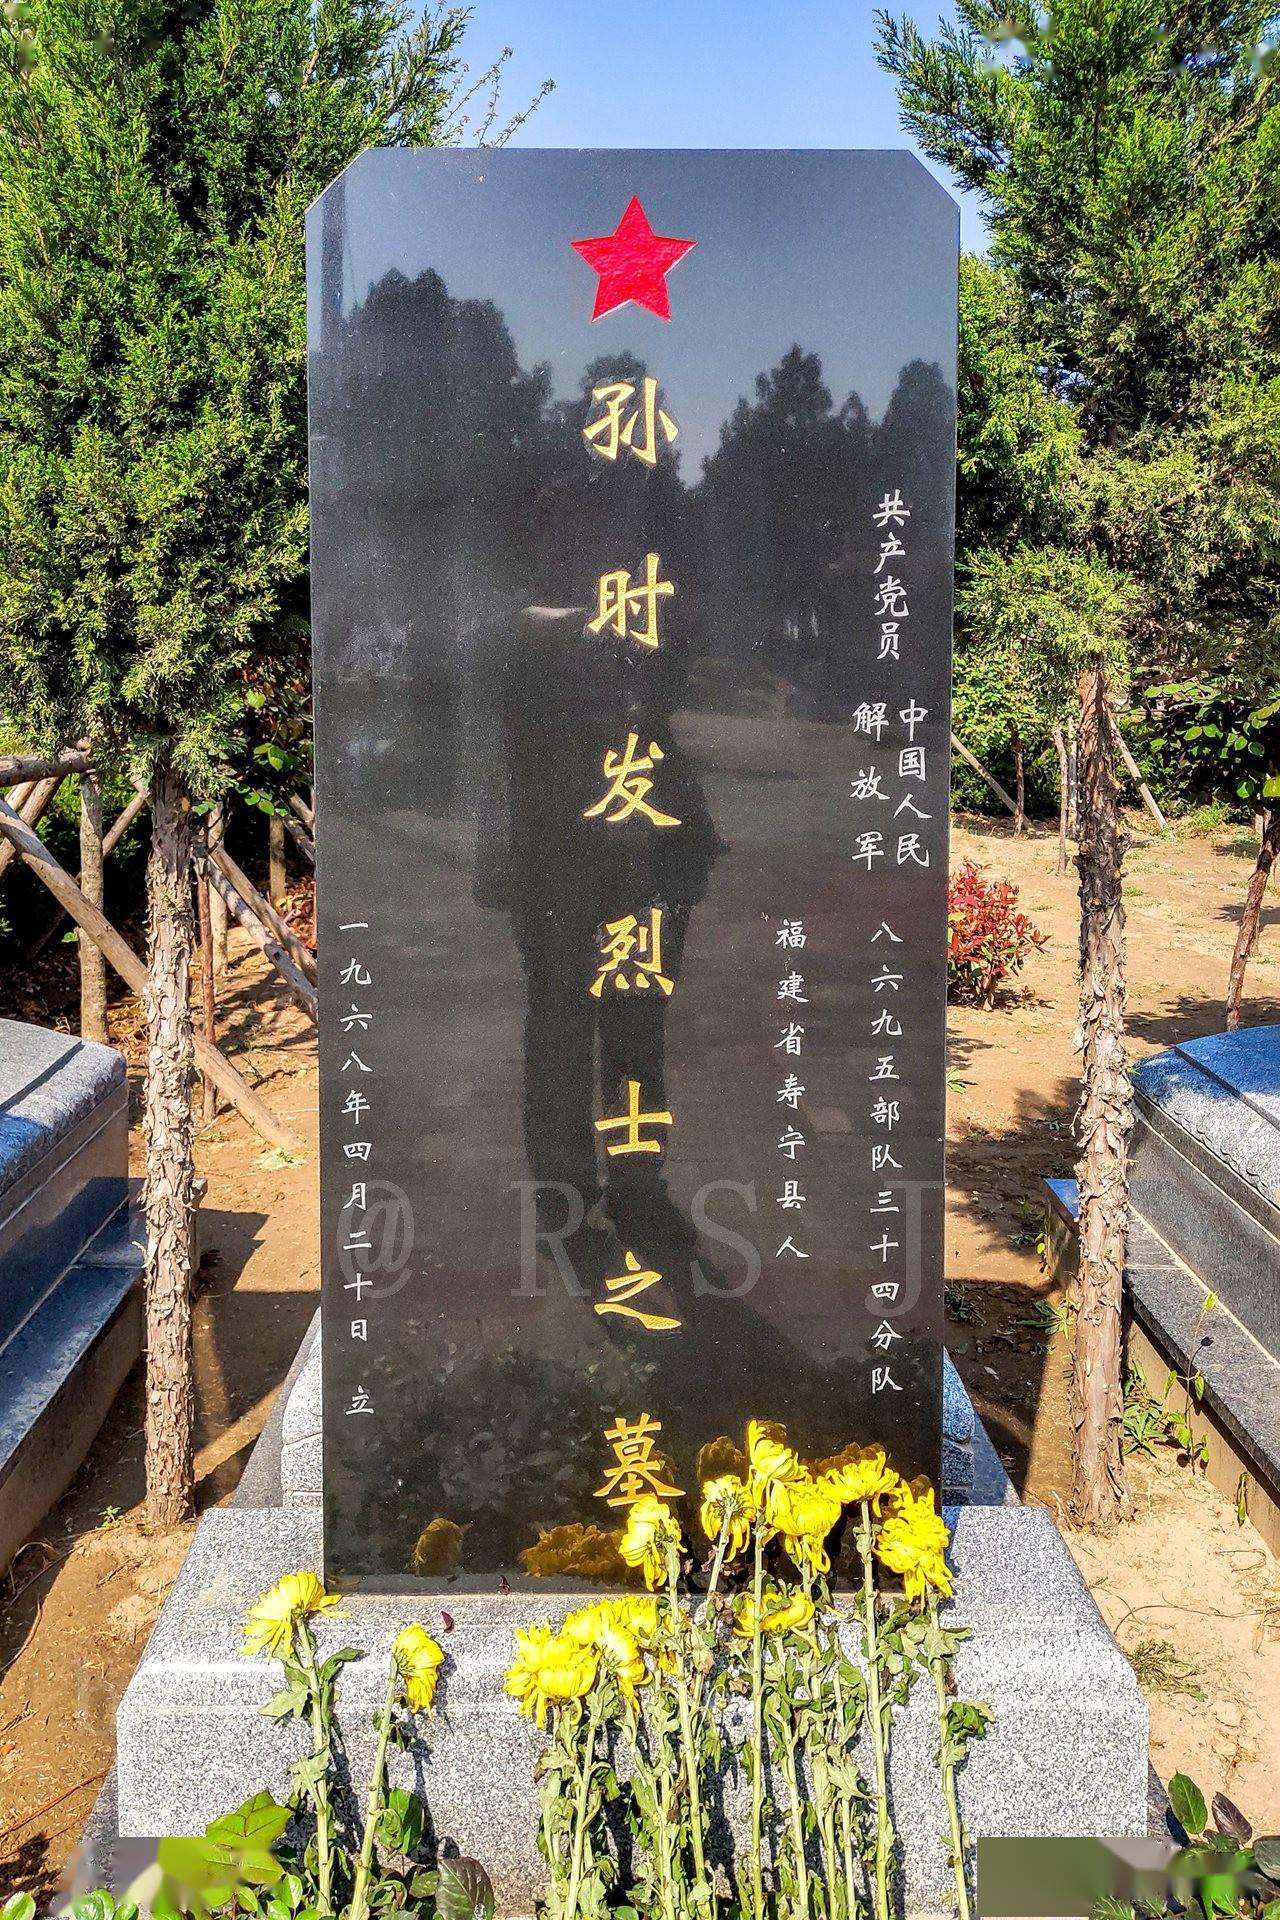 黄河之滨,邙山头上,安葬着6位烈士,成为爱国主义教育基地